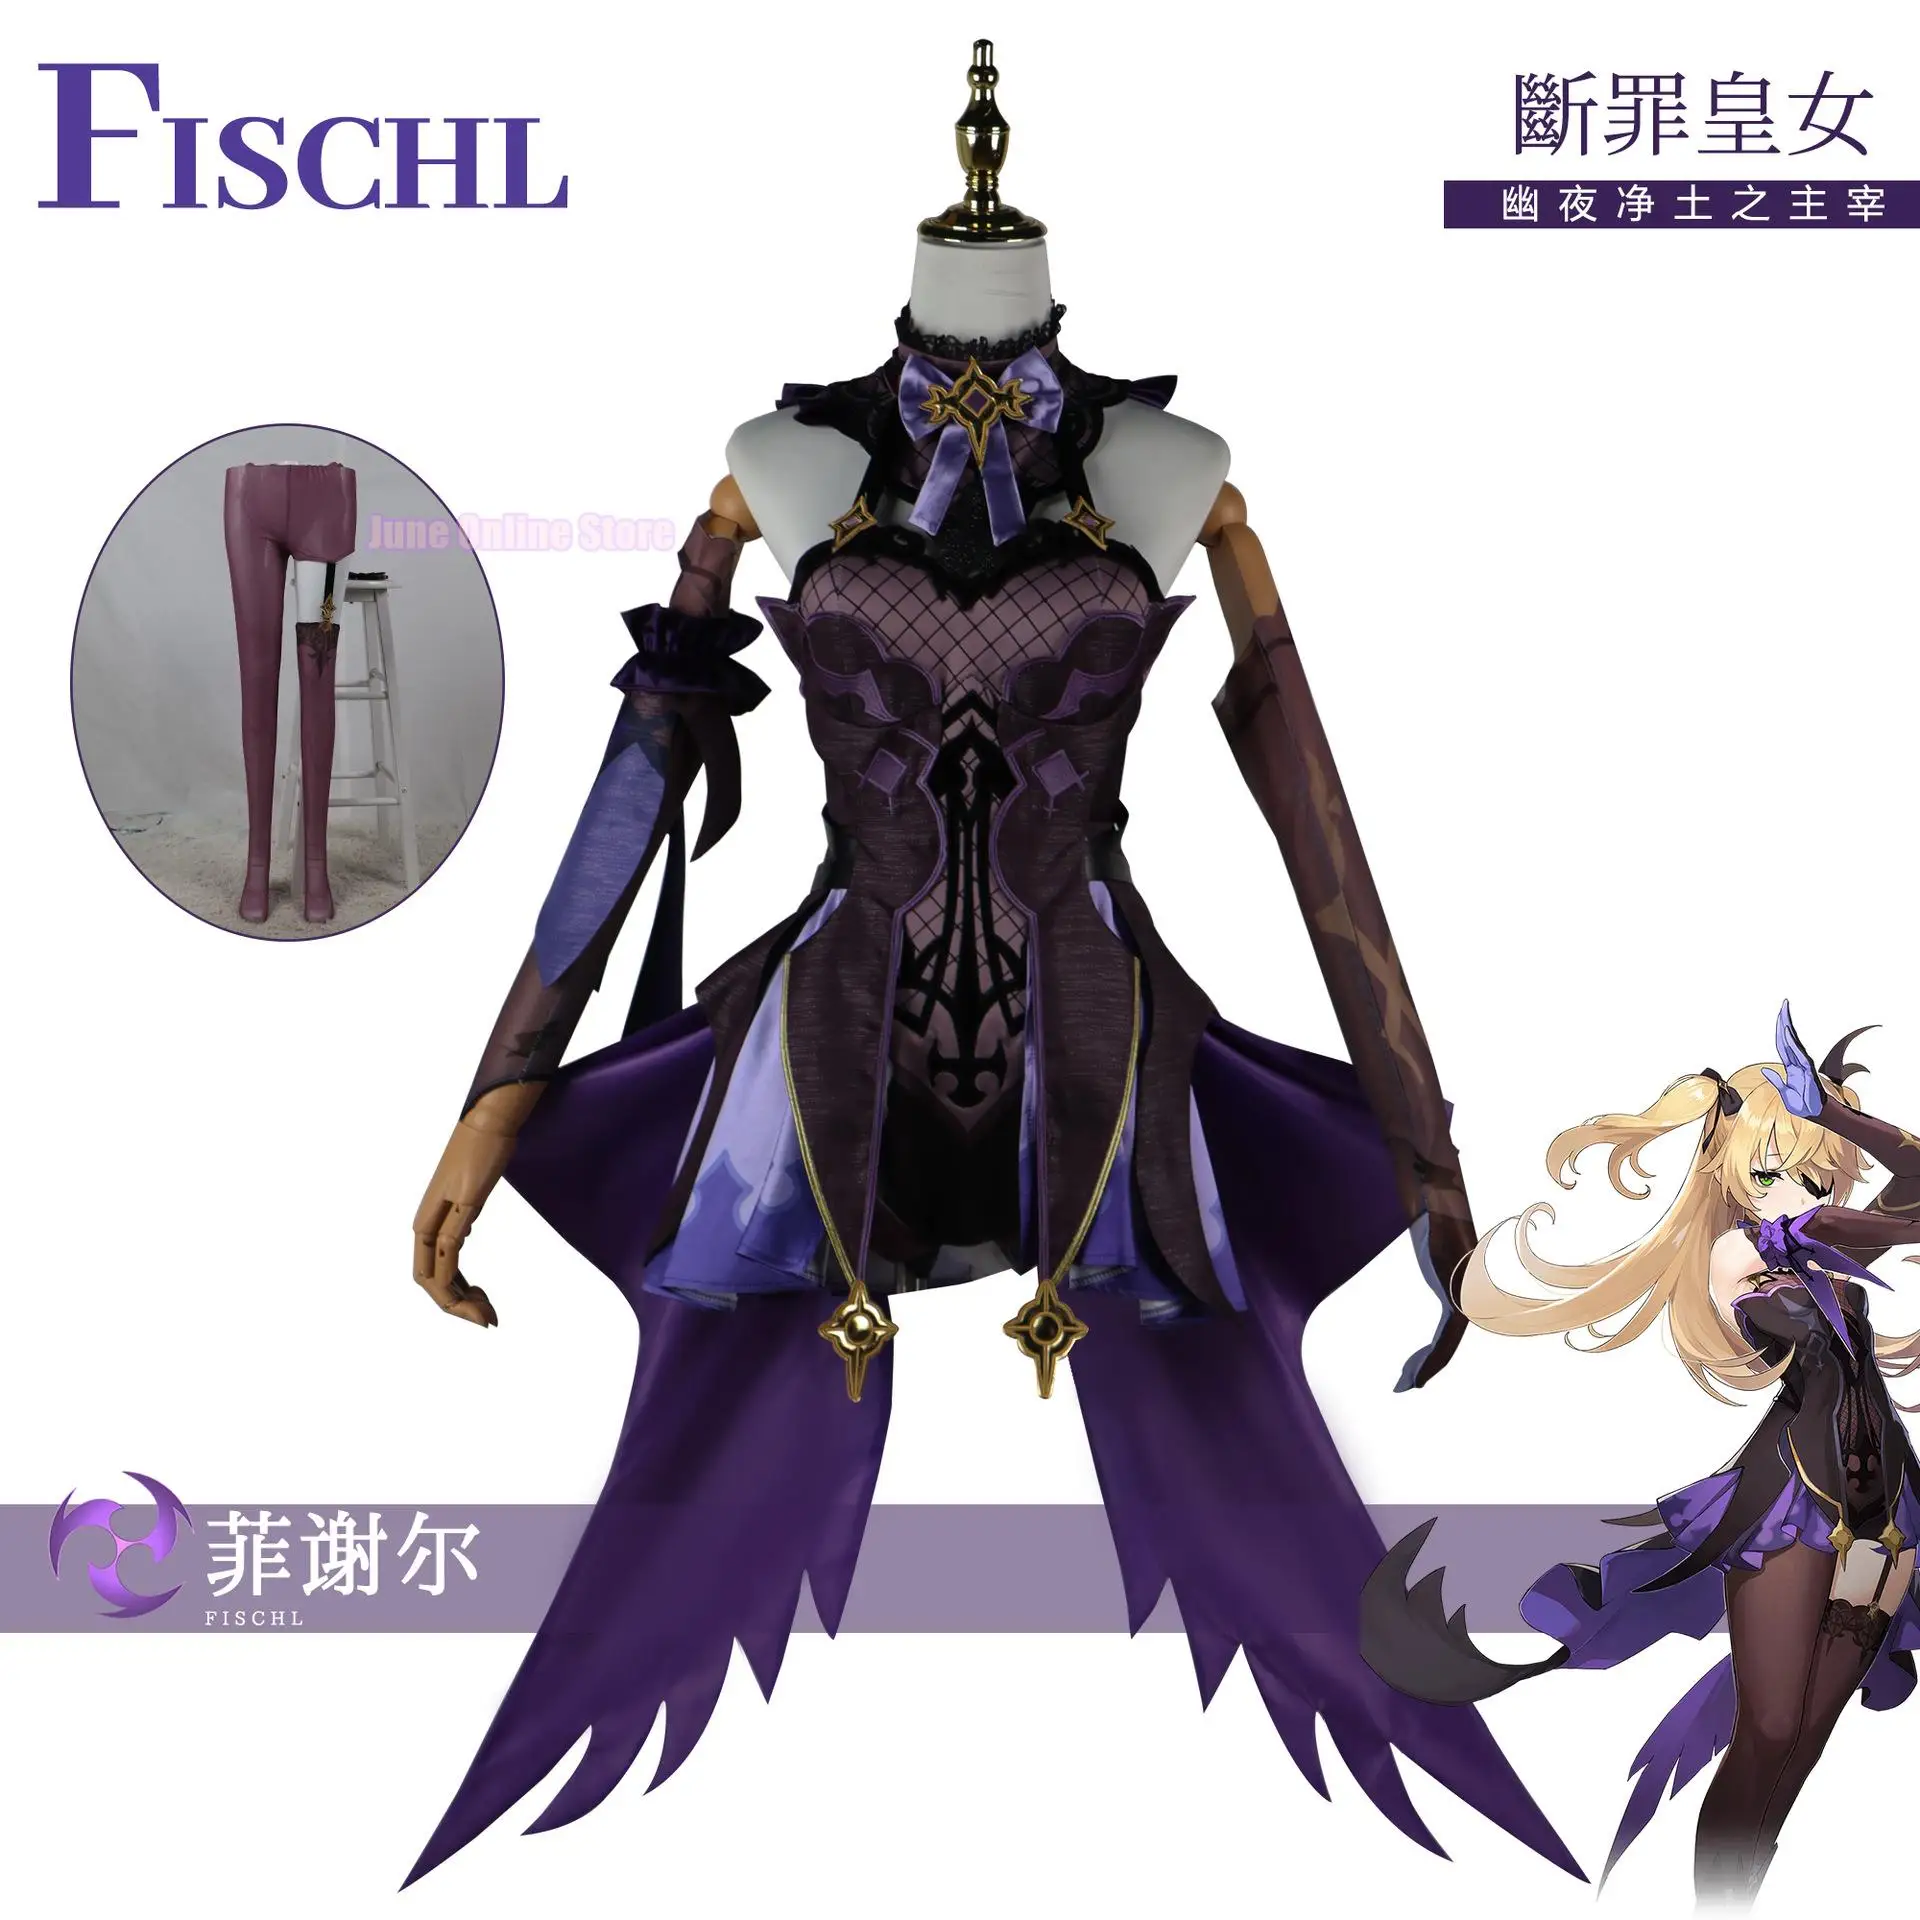 

Игровой костюм для косплея Genshin Impact Fischl, модель костюма для Хэллоуина, карнавала